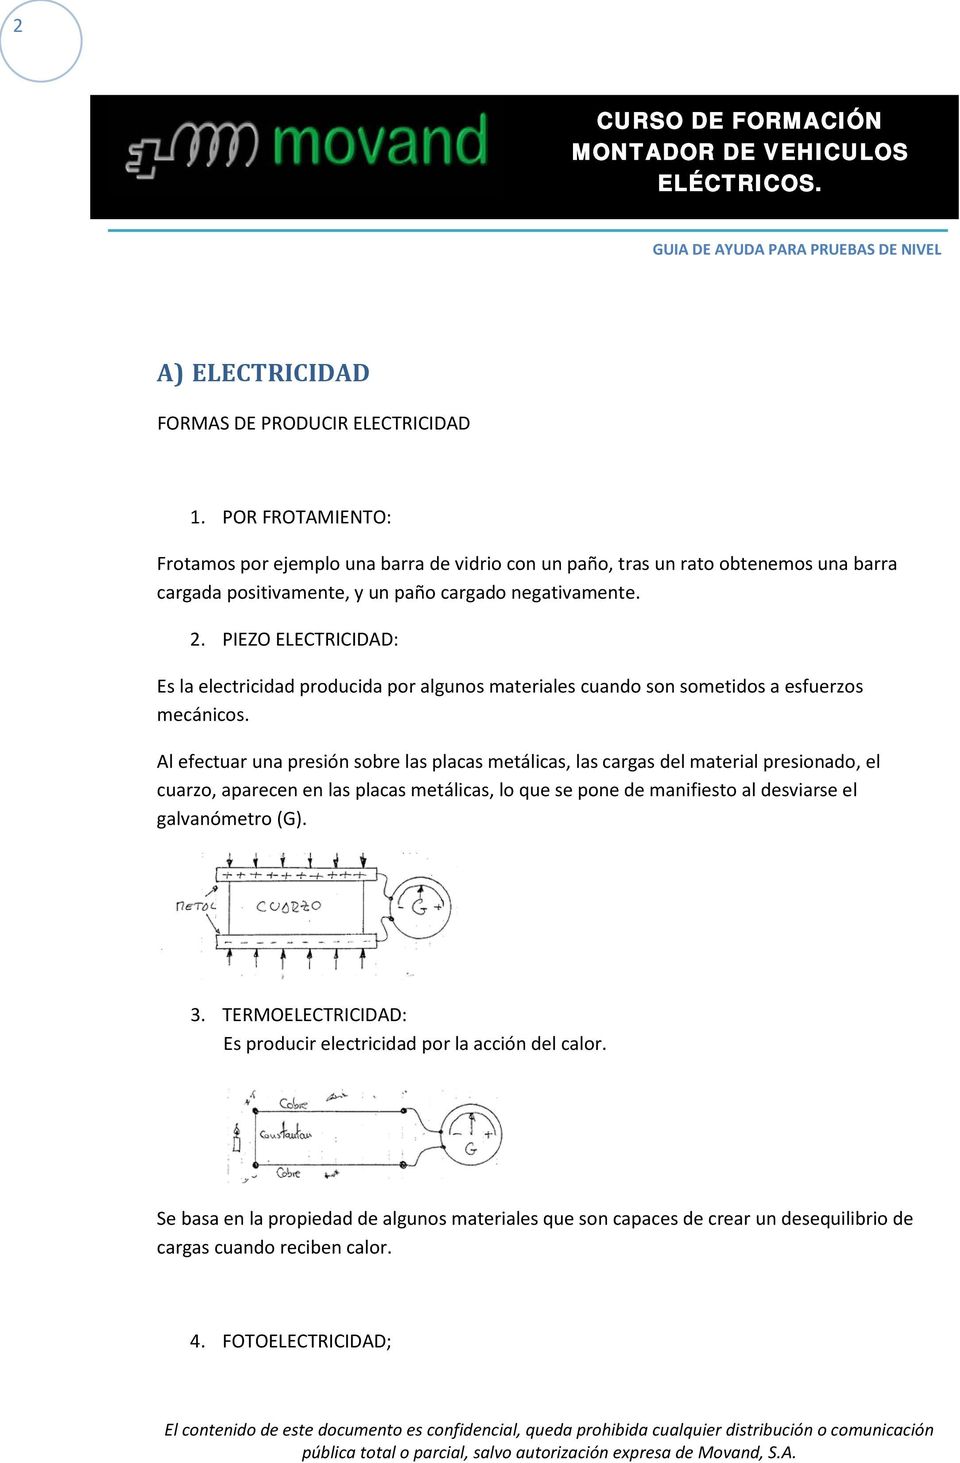 PIEZO ELECTRICIDAD: Es la electricidad producida por algunos materiales cuando son sometidos a esfuerzos mecánicos.